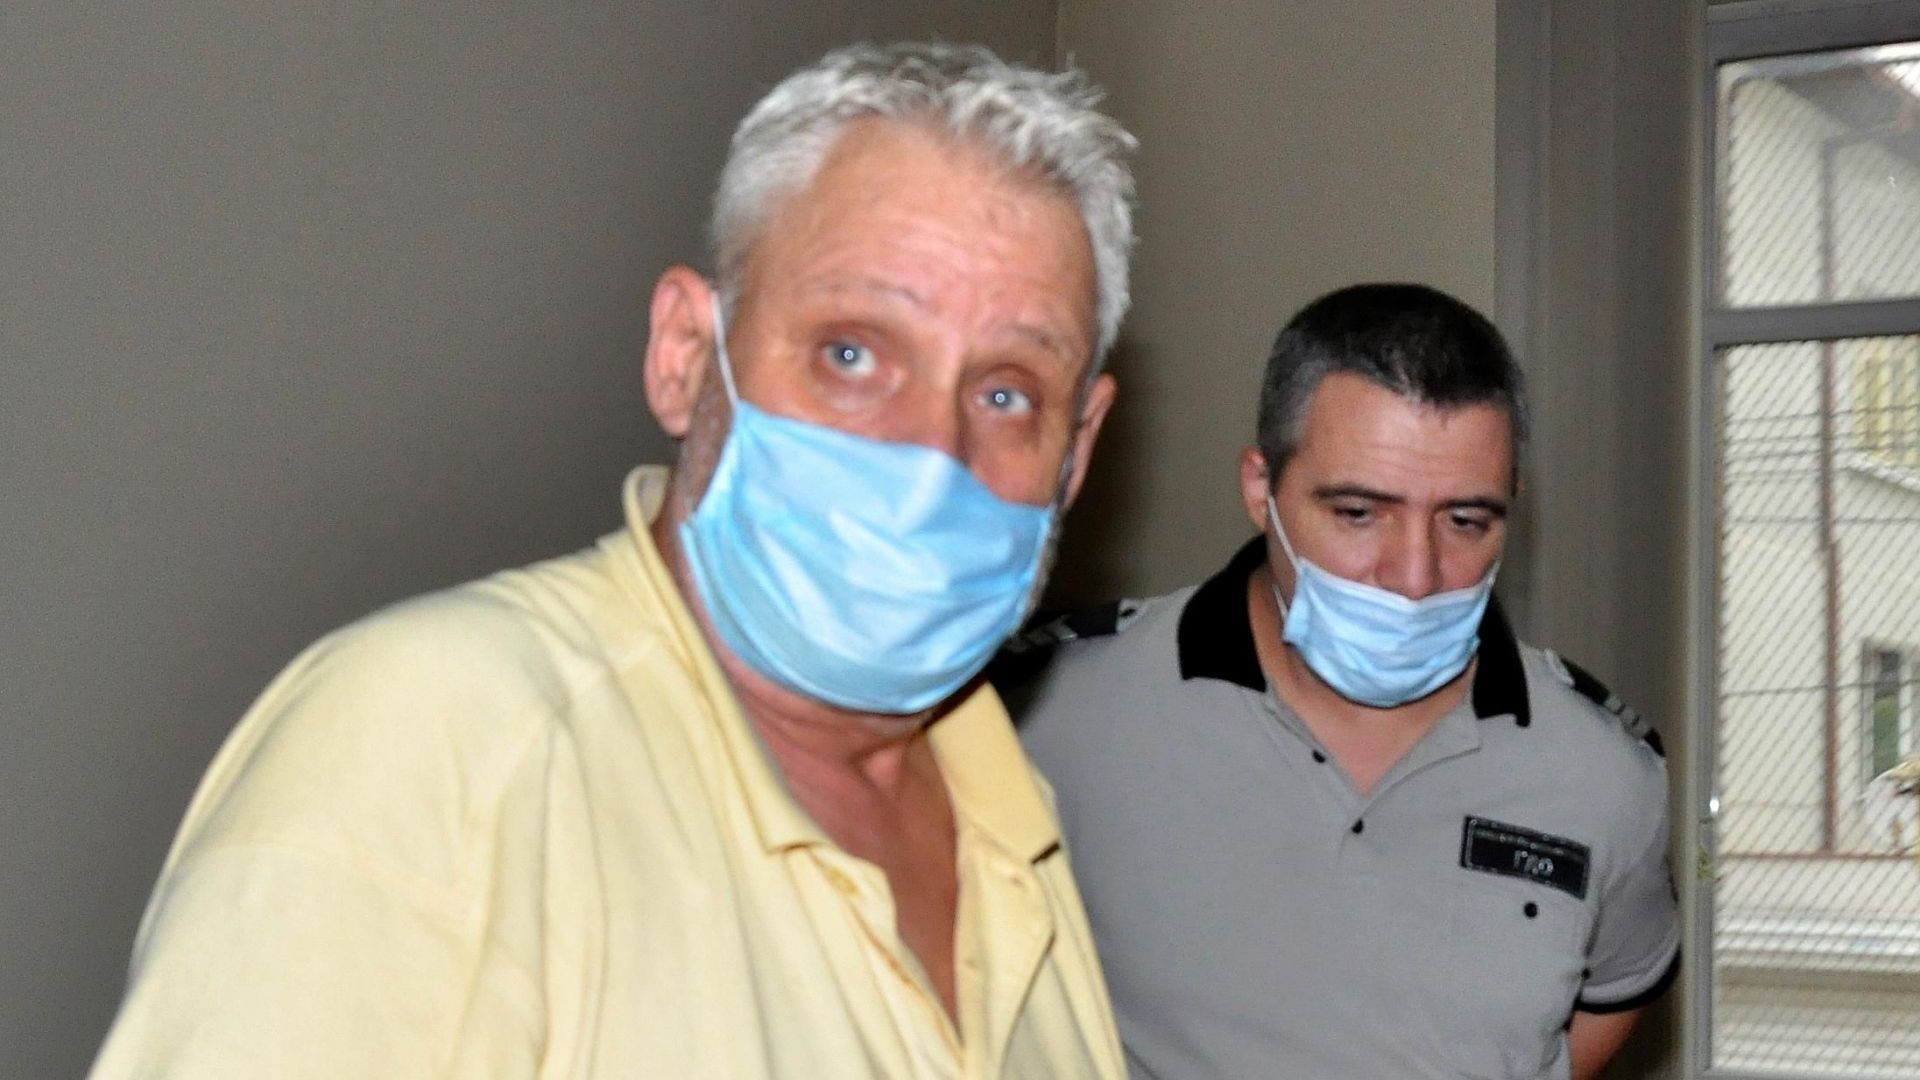  Милкинов е с неприятни характерности, като е осъждан и е оправдан през 2011 година 